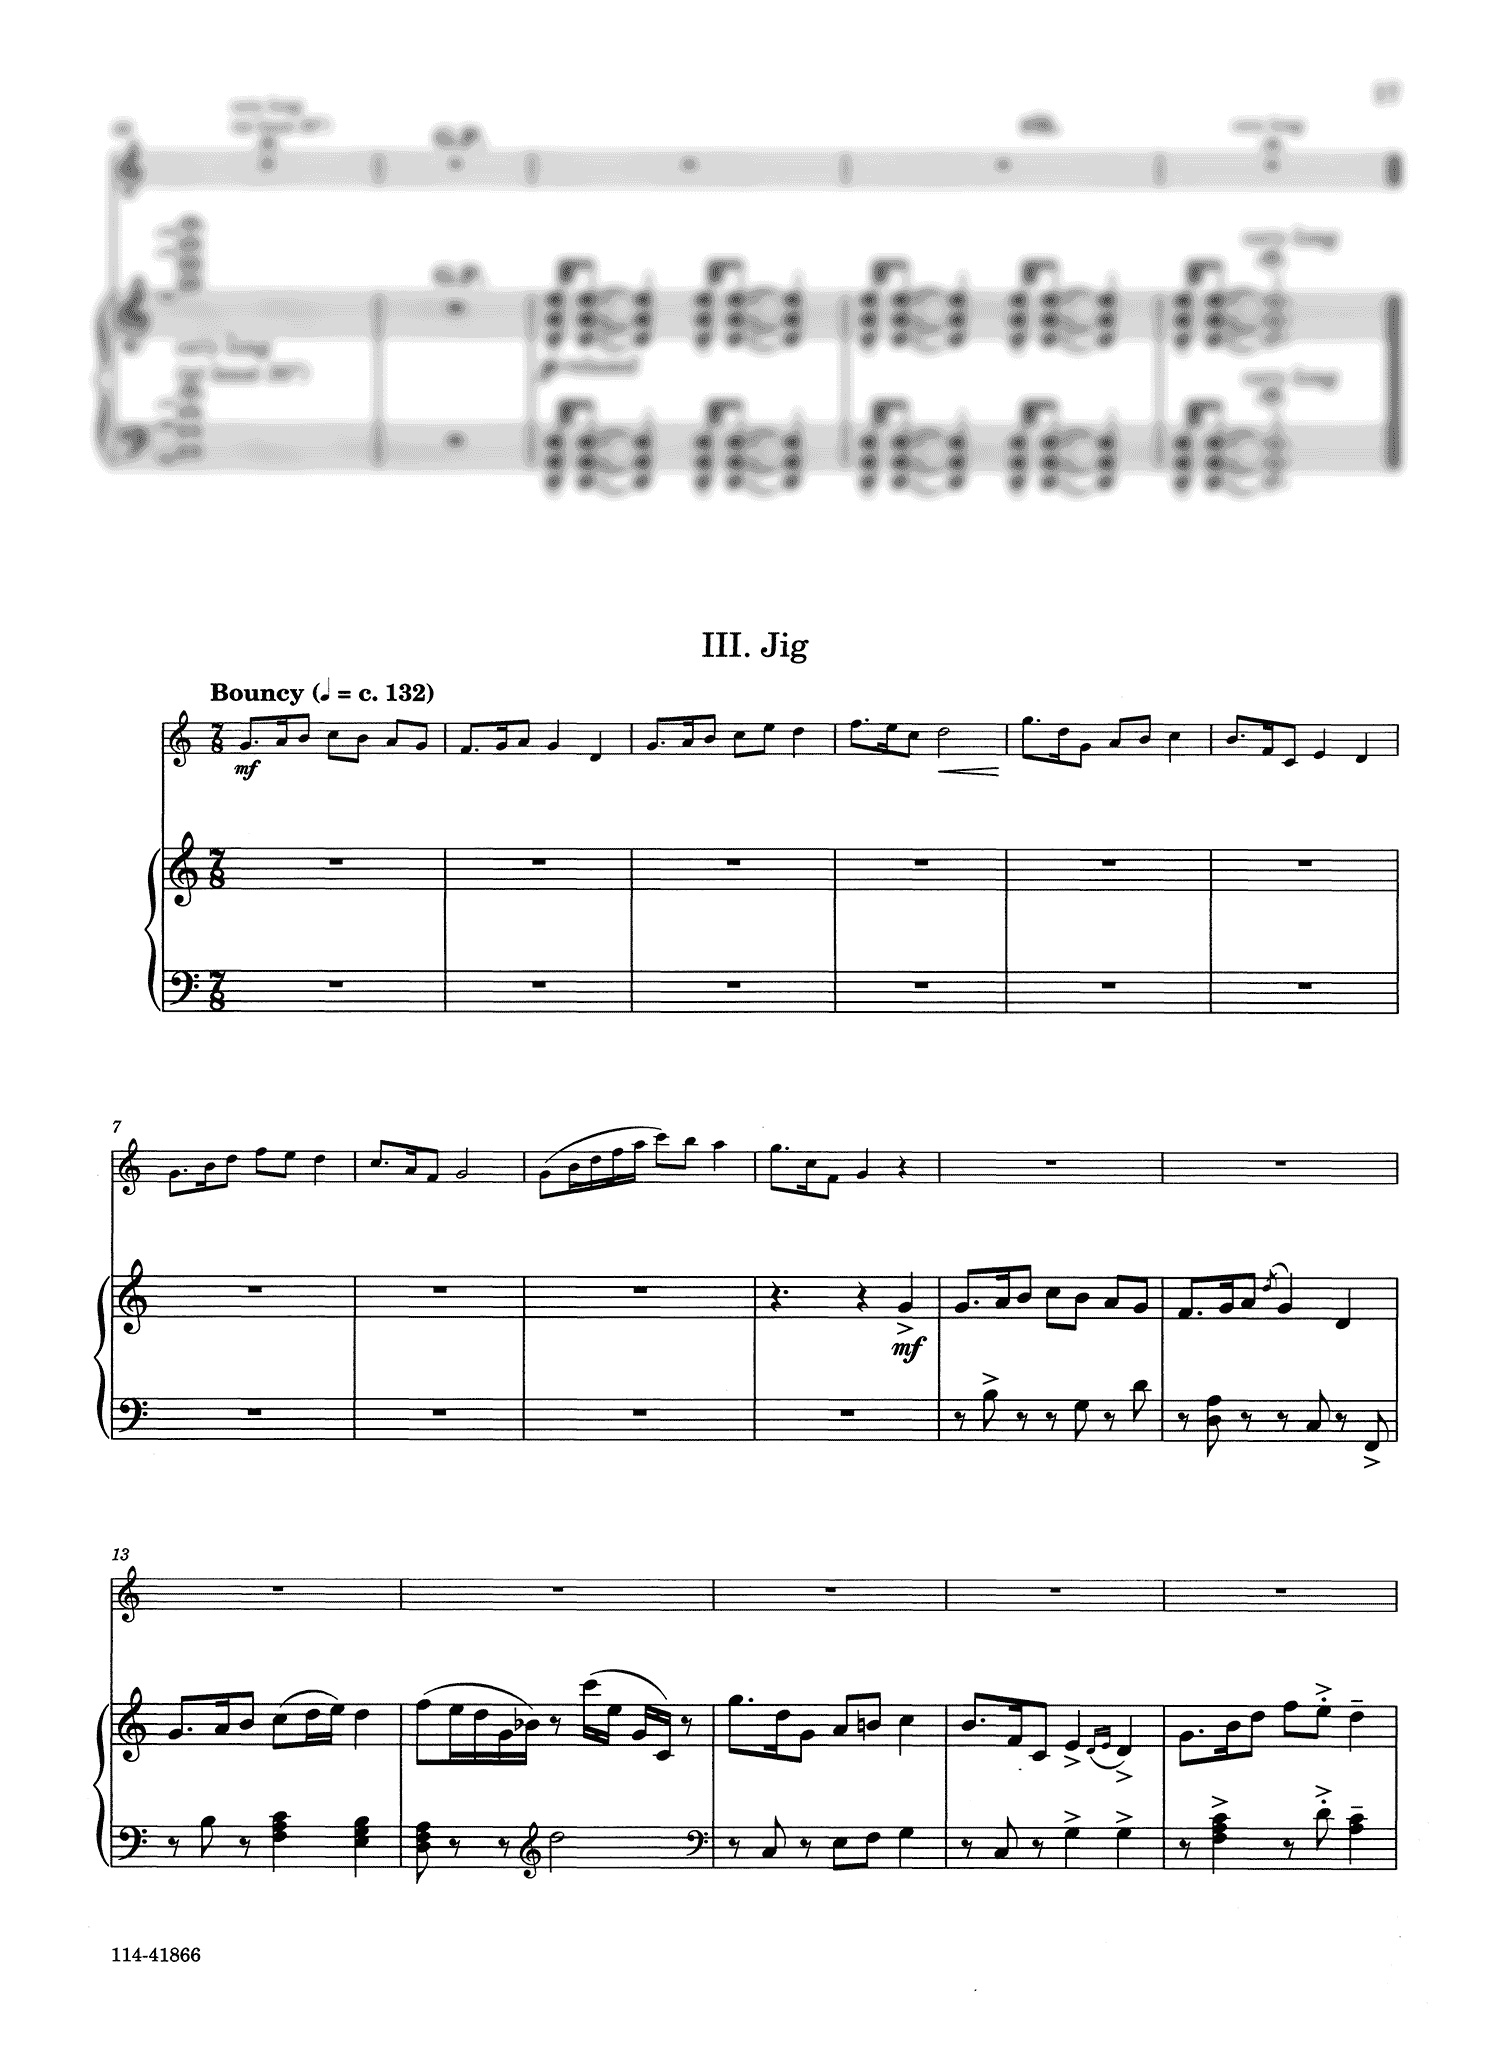 Sean Osborn Sonata for E-flat Clarinet & Piano - Movement 3